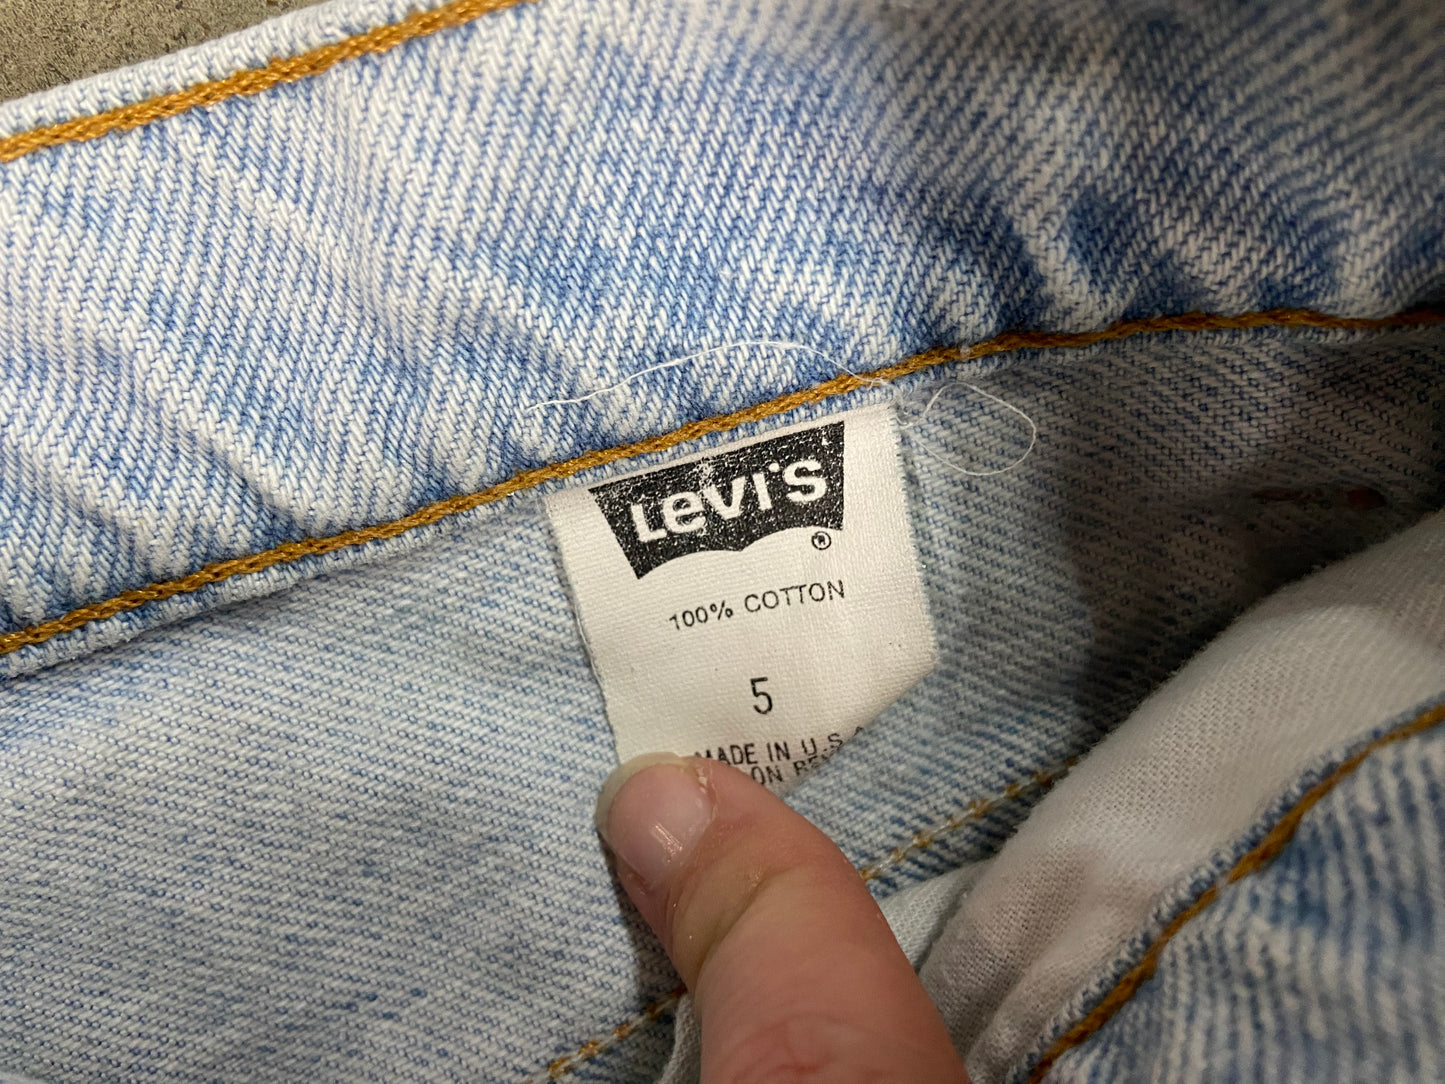 VTG levi's light Wash Blue Jeans Sz 26x28